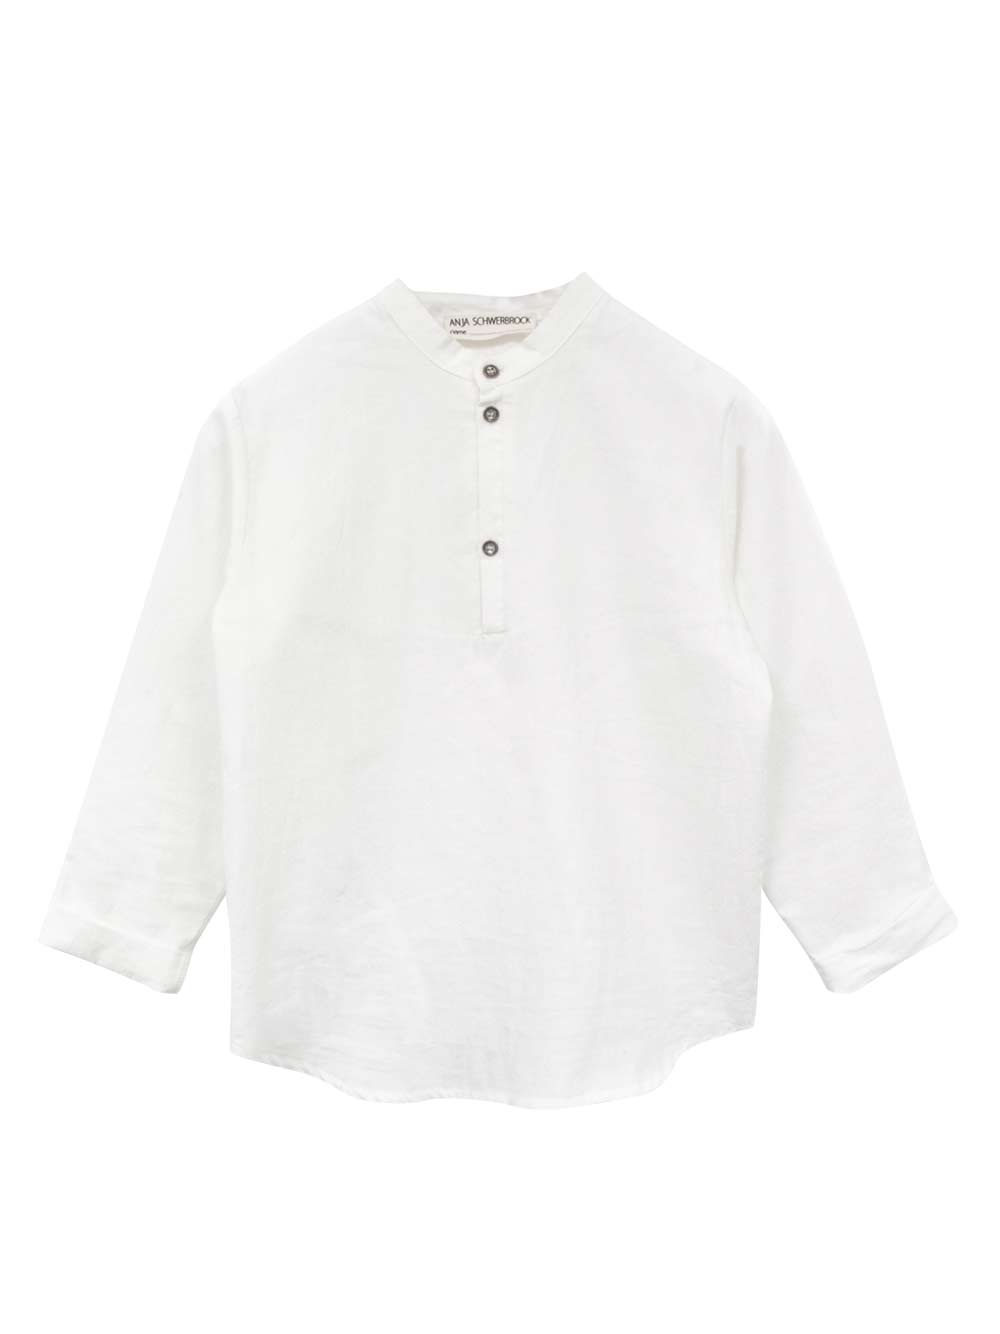 Seta White Shirt